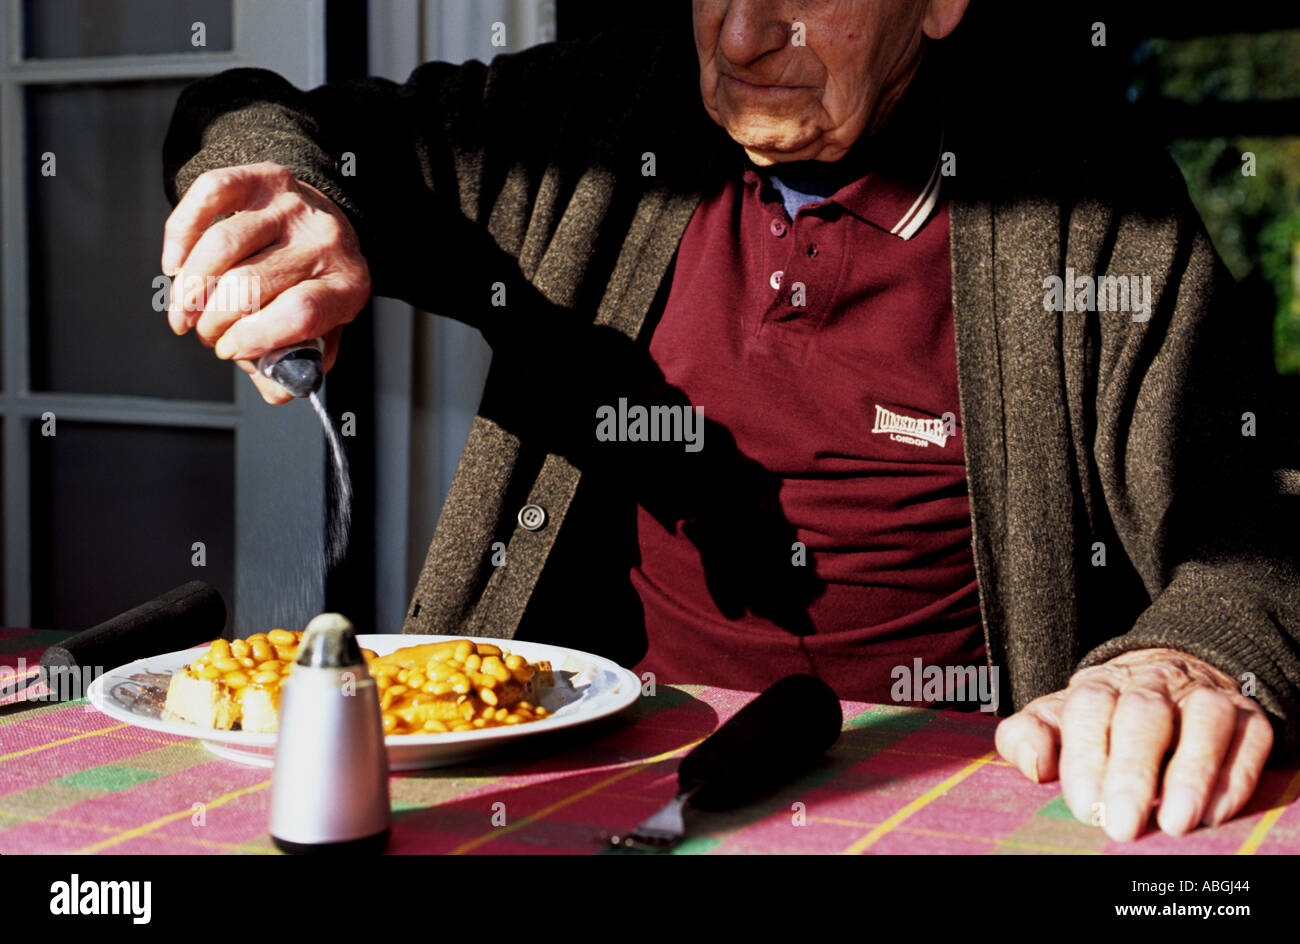 Alte im Alter Rentner, die Zugabe von Salz, Bohnen auf toast  Stockfotografie - Alamy